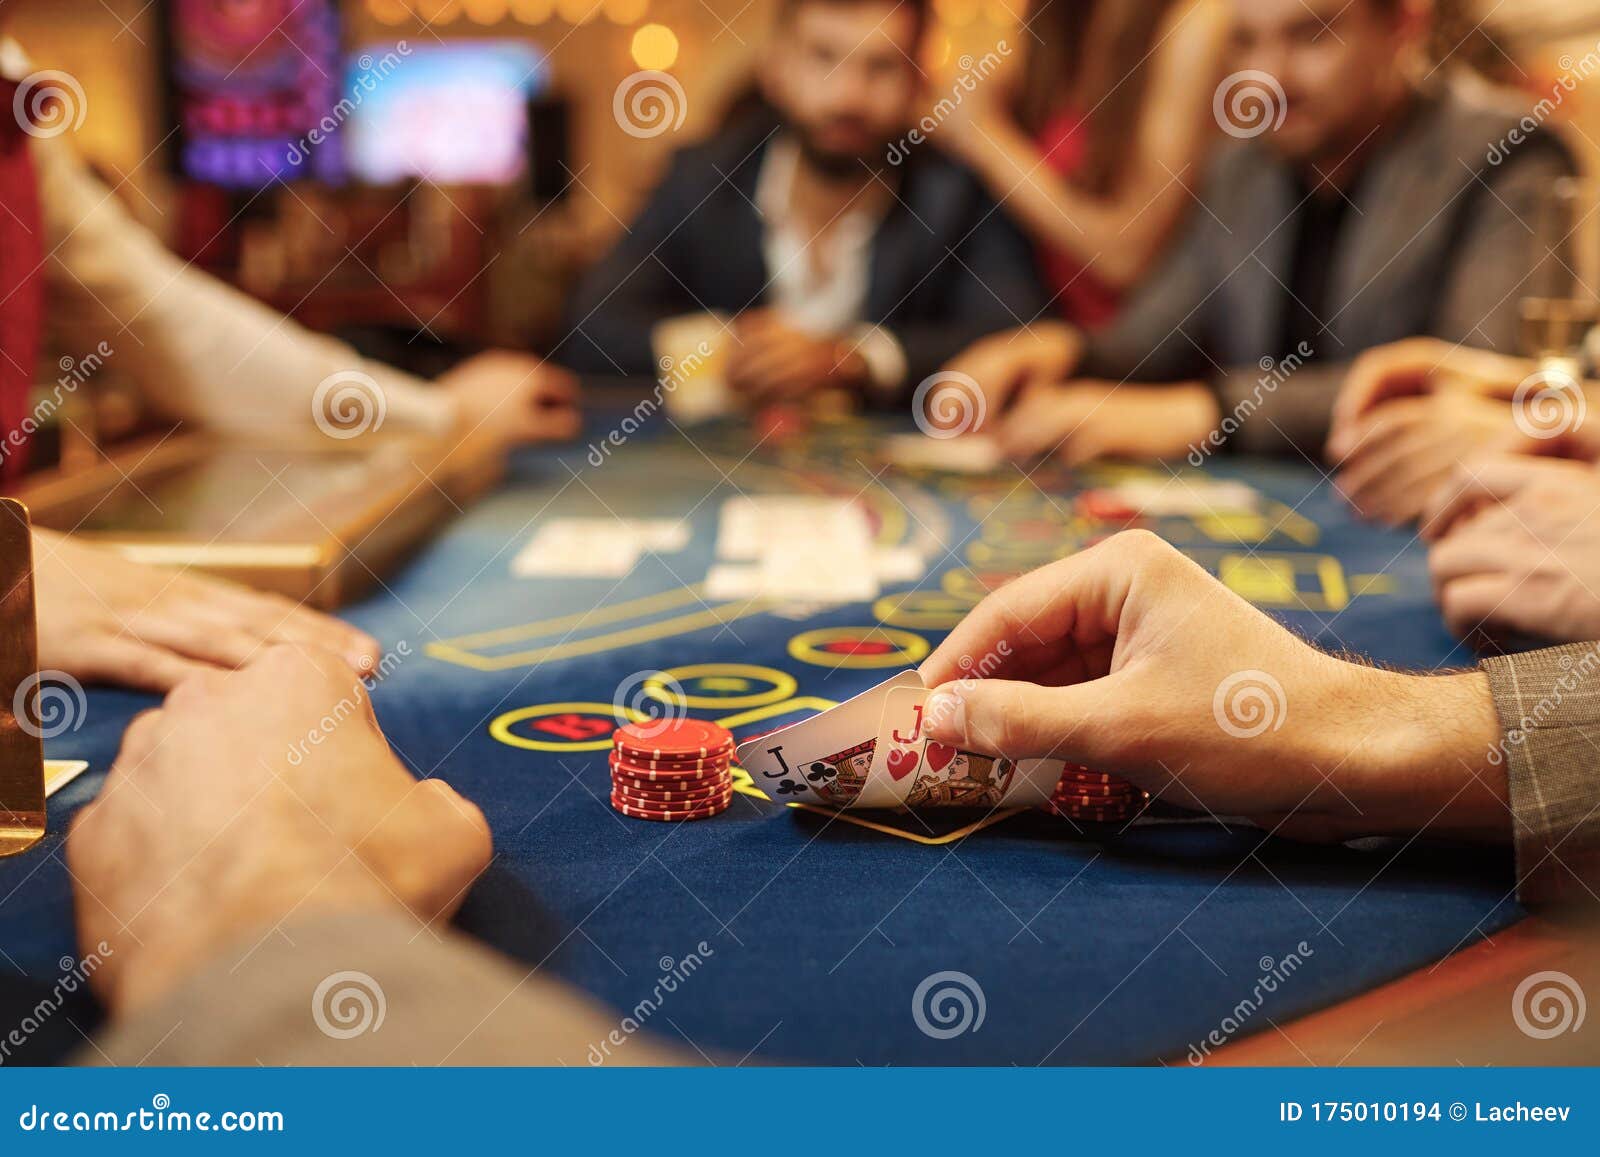 Mensen Spelen Poker Aan Tafel In Het Casino. Stock Foto - Image Of Mens,  Aantrekkingskracht: 175010194